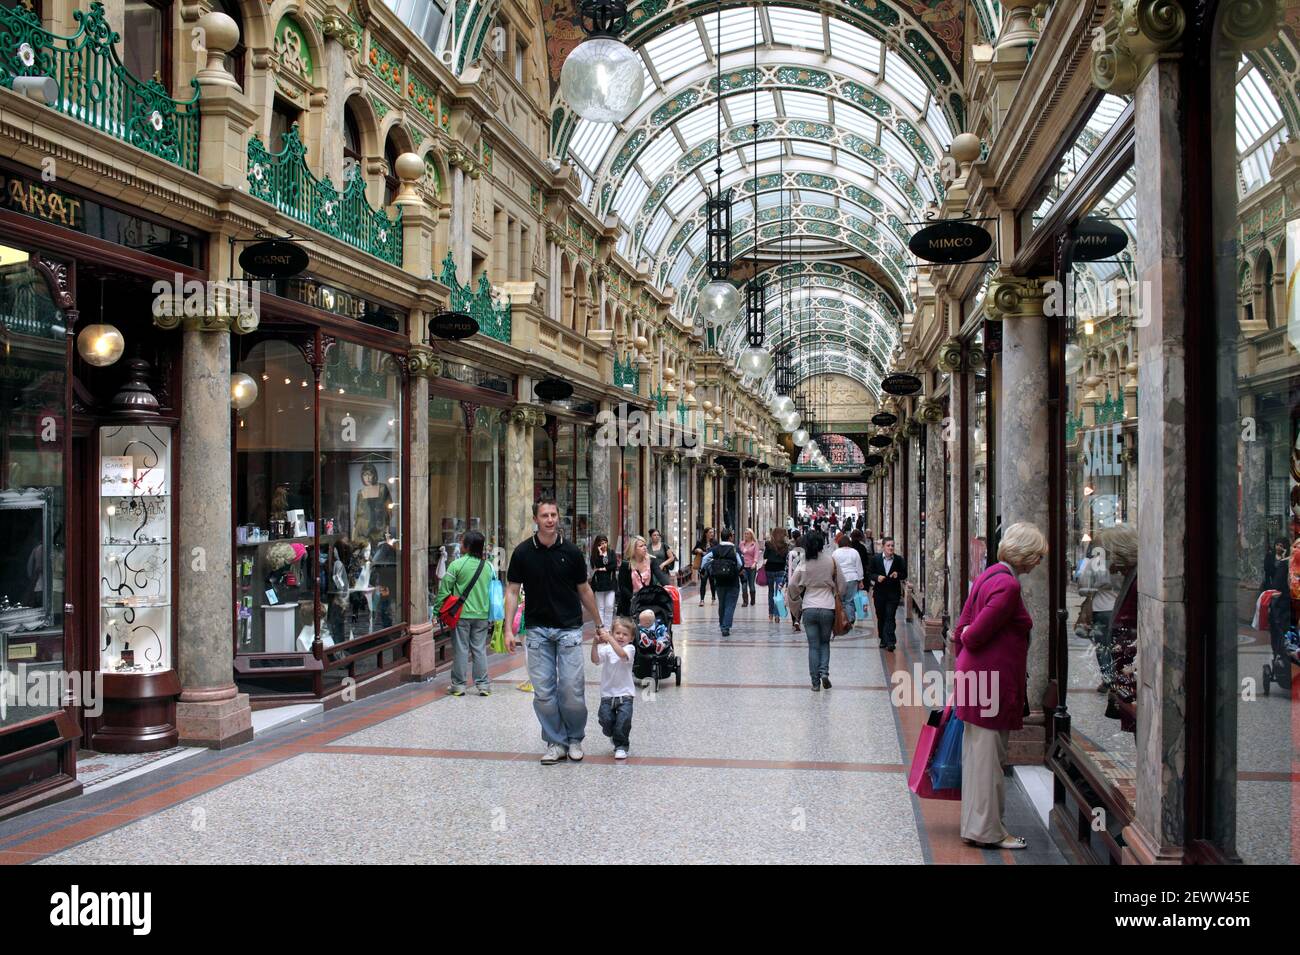 The County Arcade, dans le quartier Victoria, centre-ville de Leeds. Une galerie marchande couverte construite en 1900. Banque D'Images